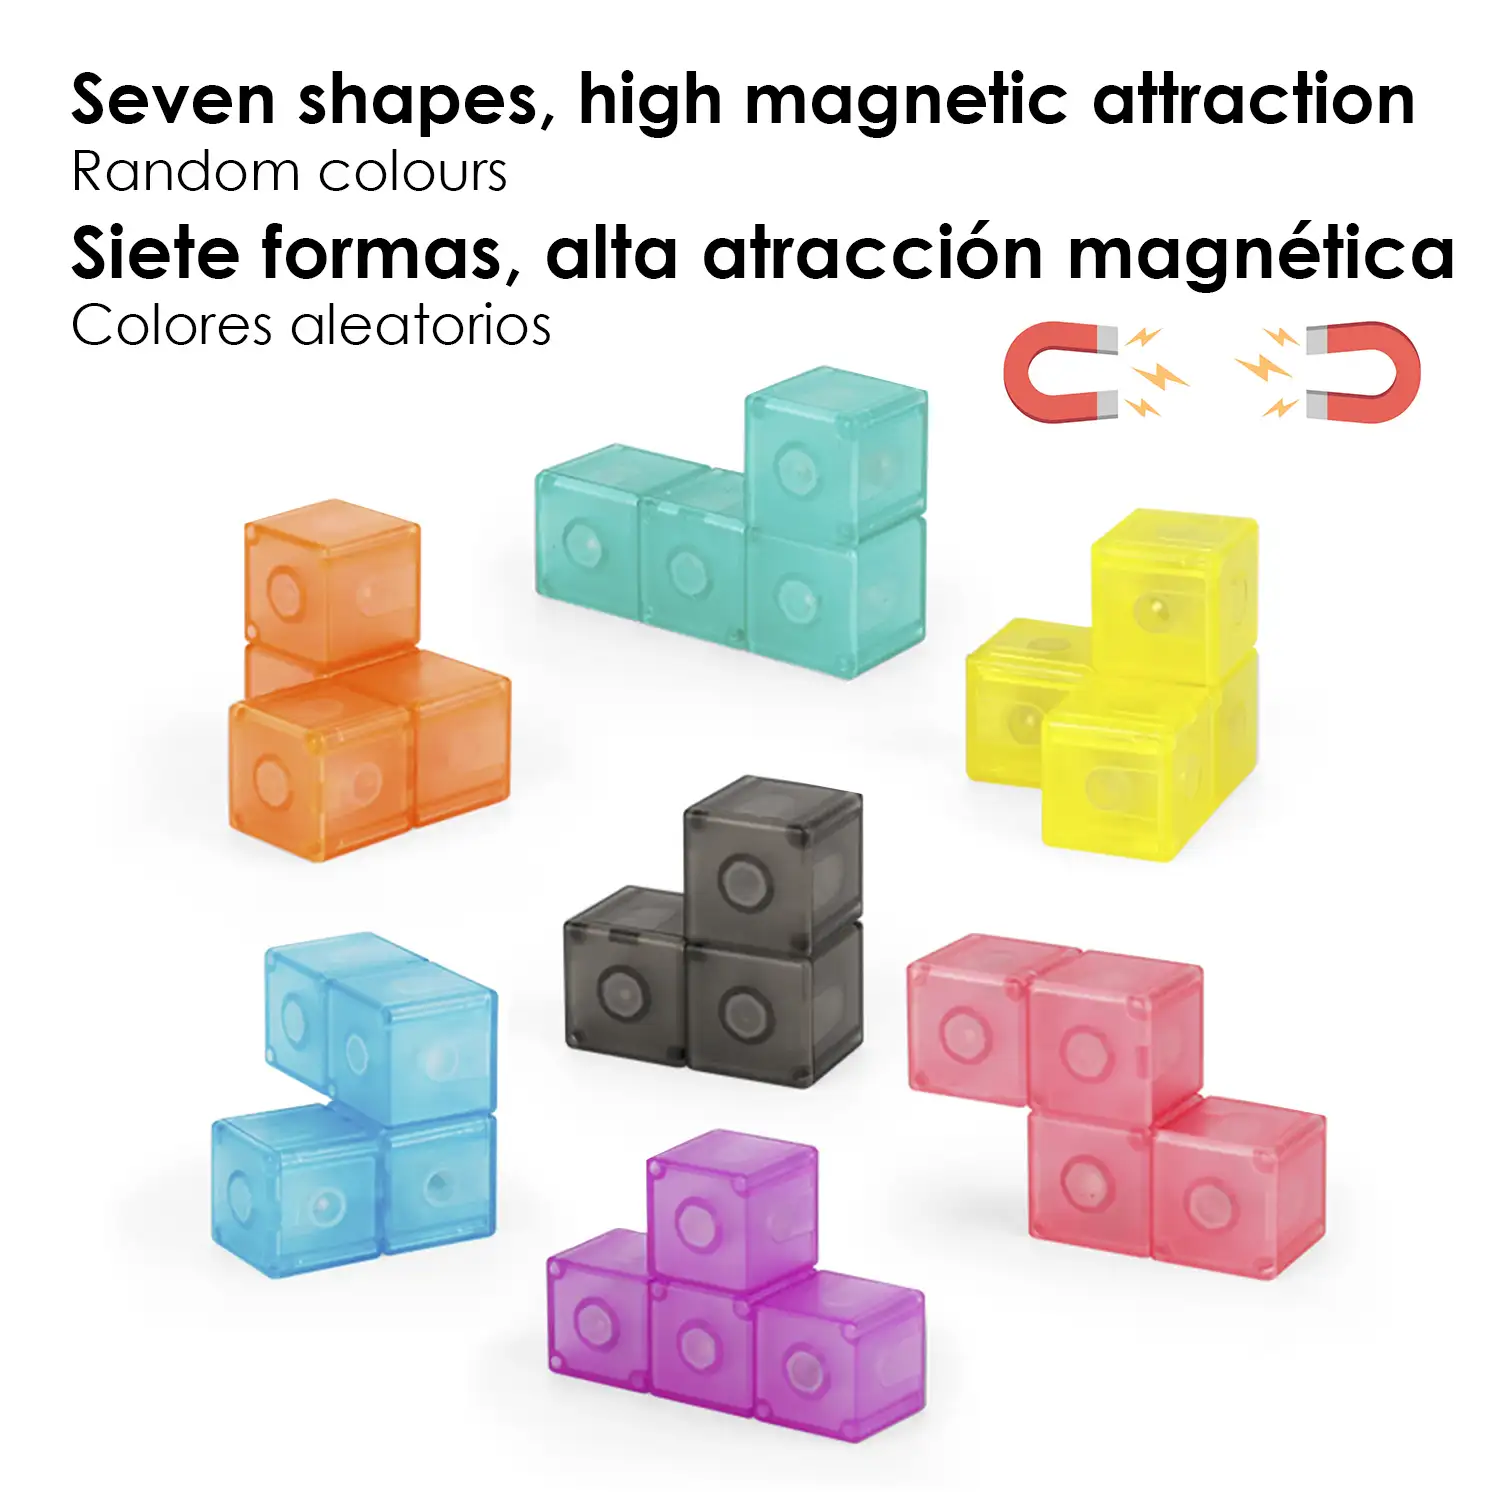 Cubo Magnético 3D Twist. Puzzle en 3 dimensiones, desafios con varios niveles de dificultad. 7 piezas 3D.